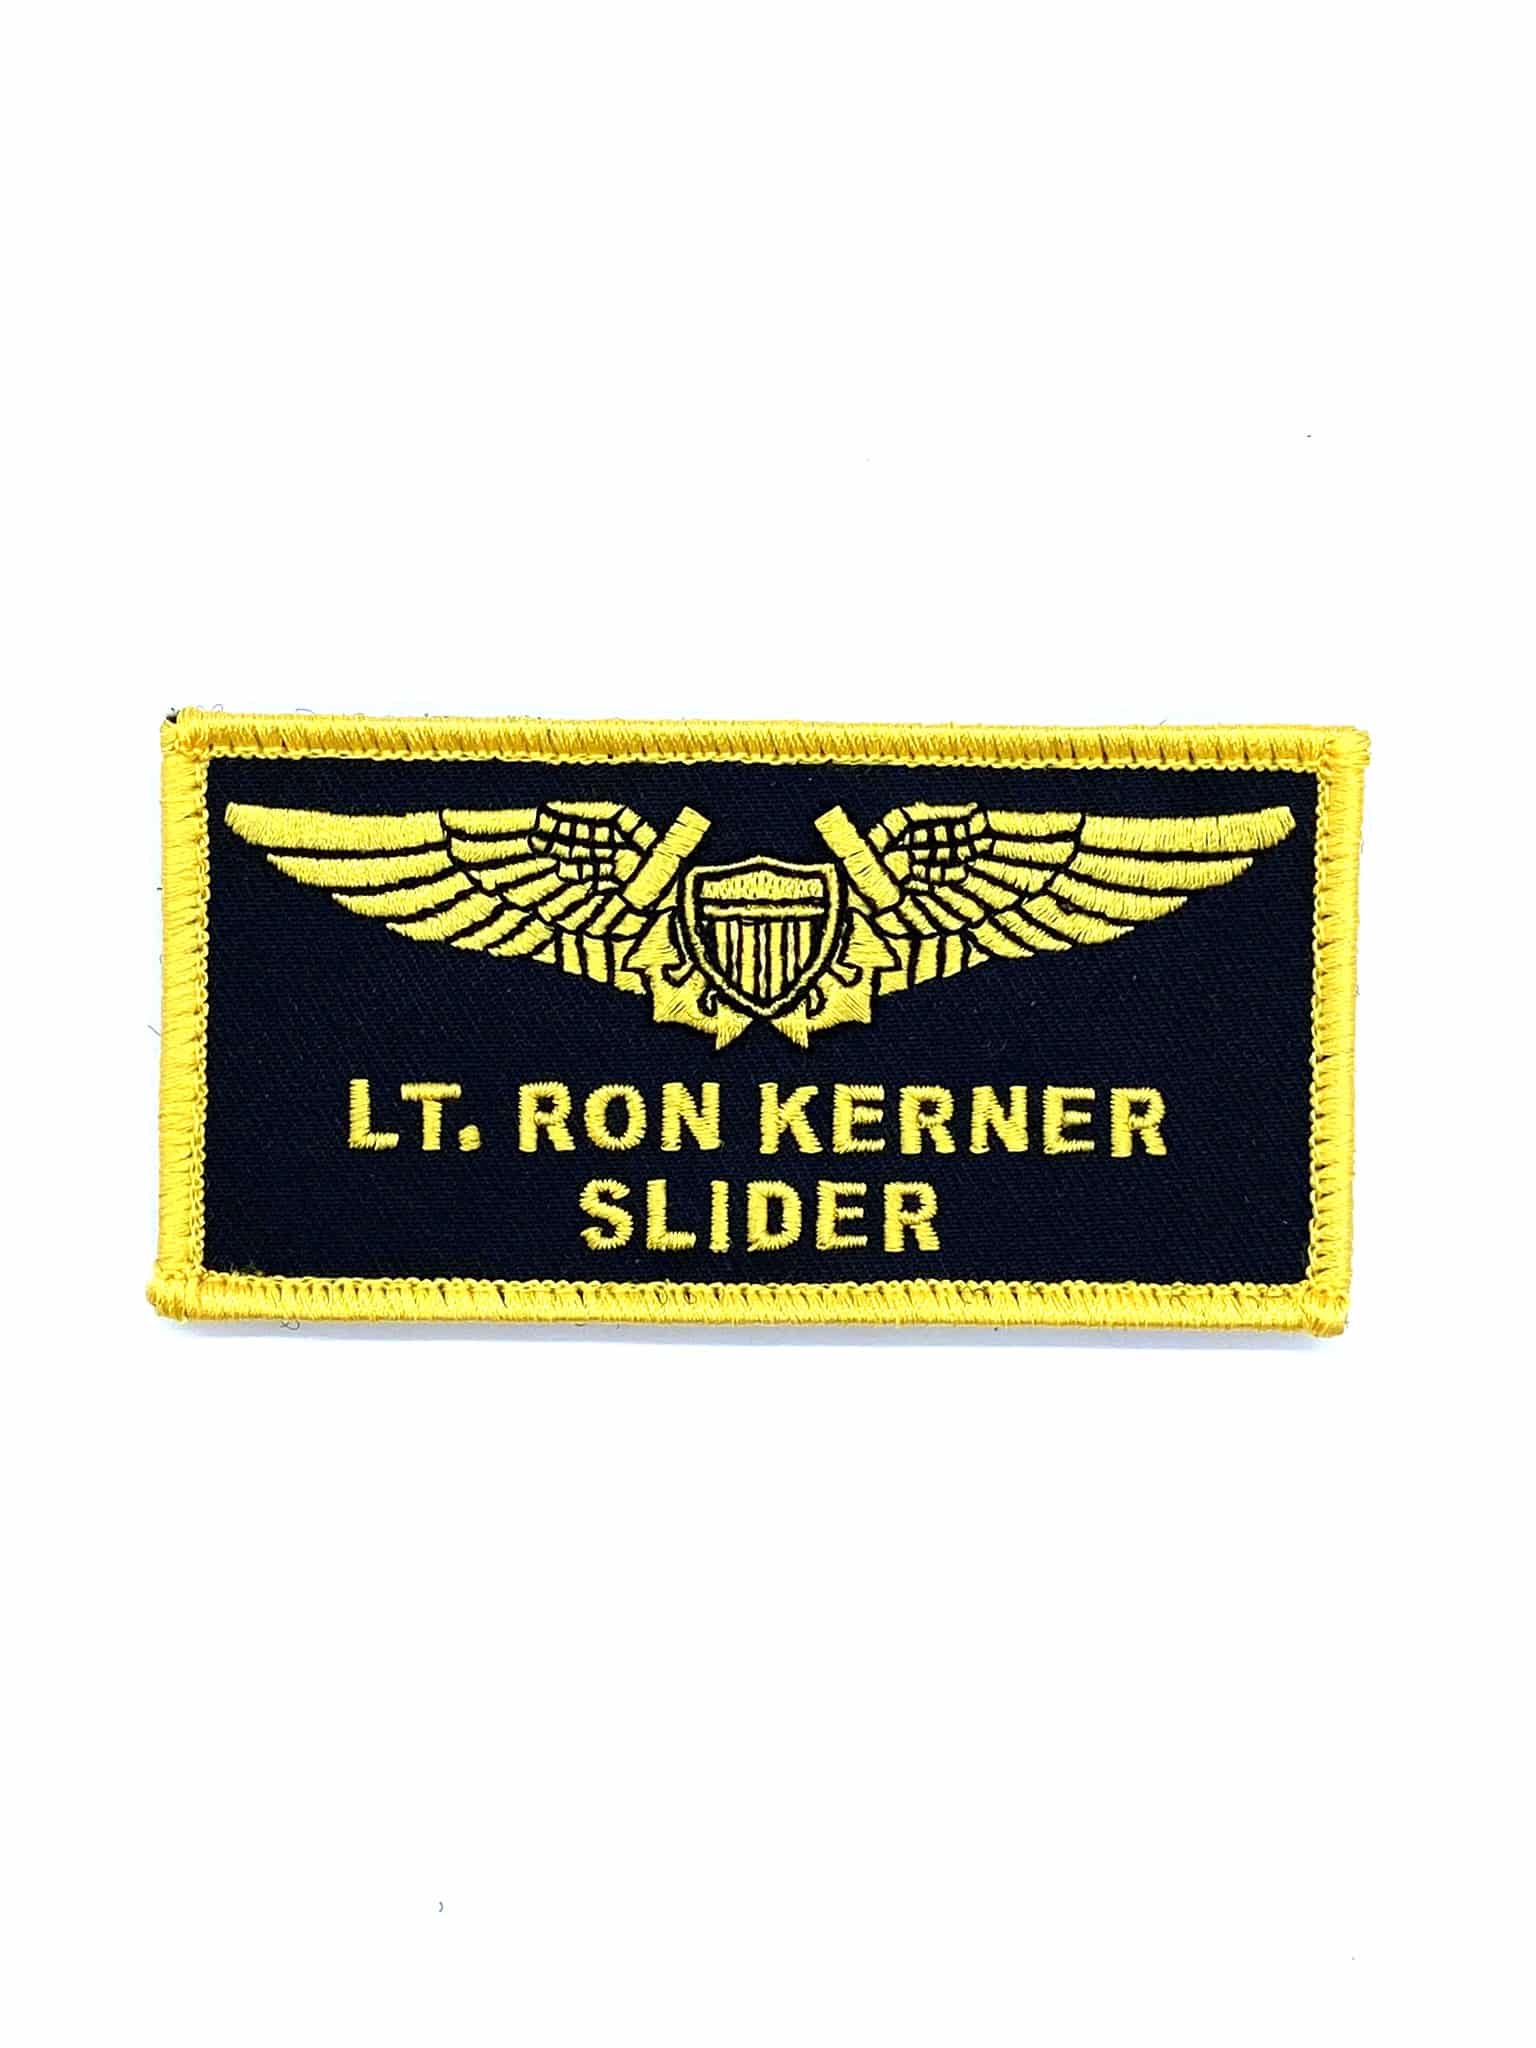 LT Ron Kerner 'SLIDER' TOPGUN Name Tag Patch - Sew On